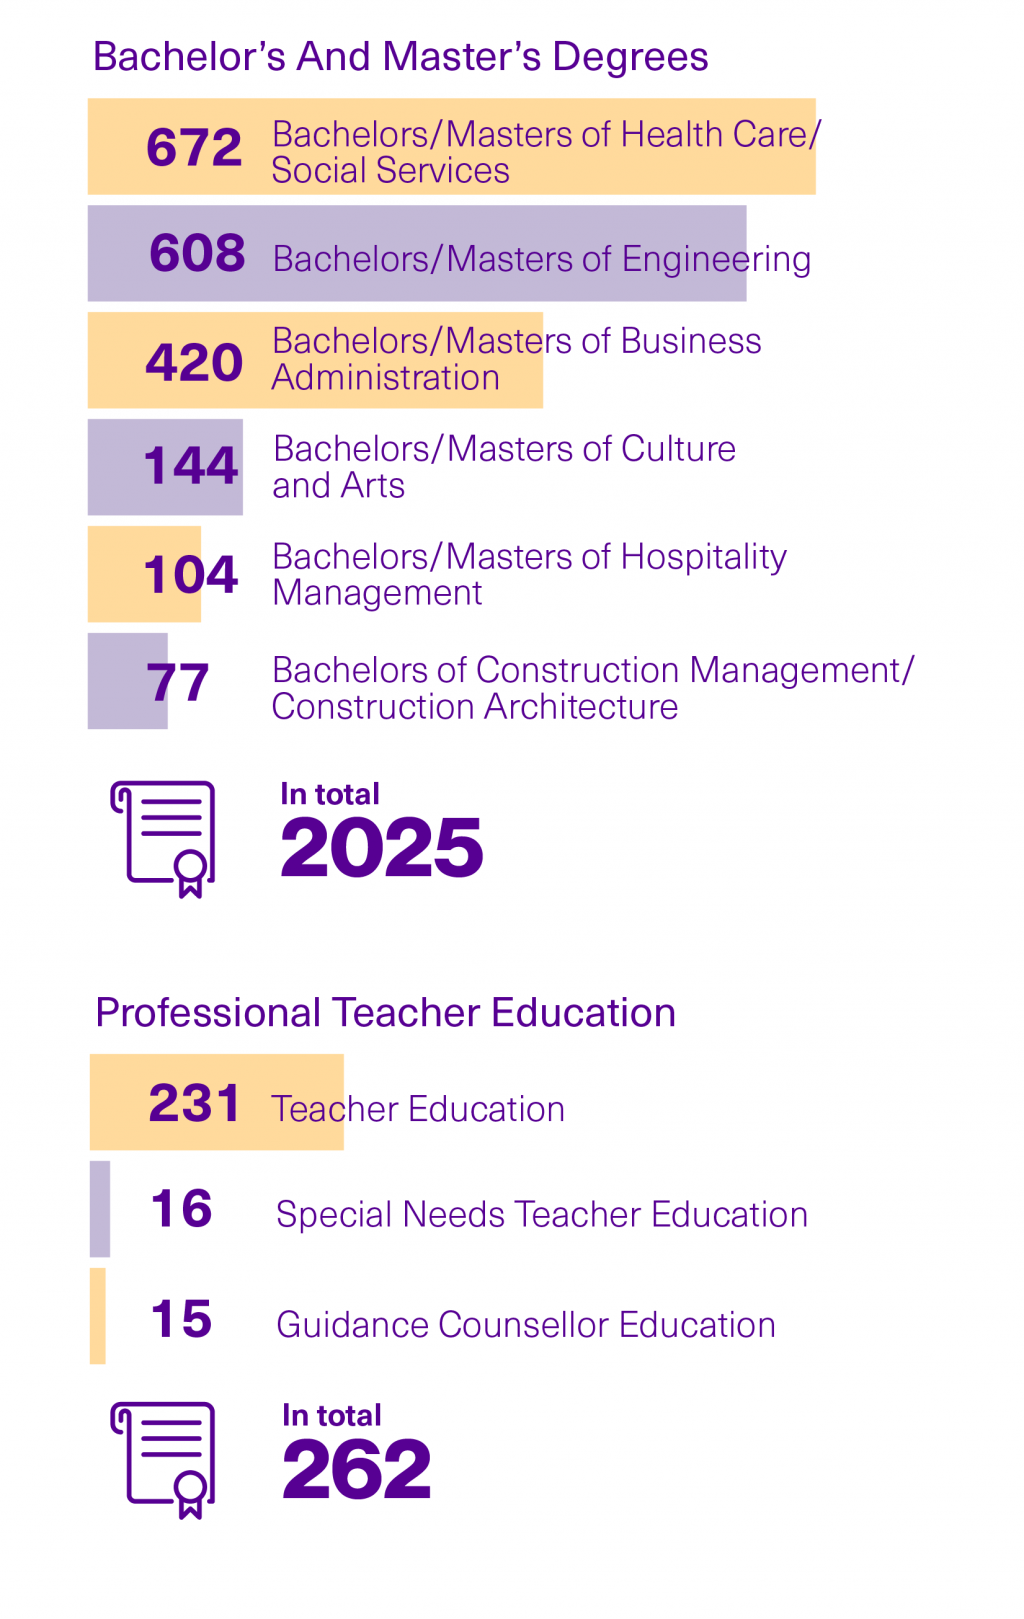 Number of graduates in 2020.